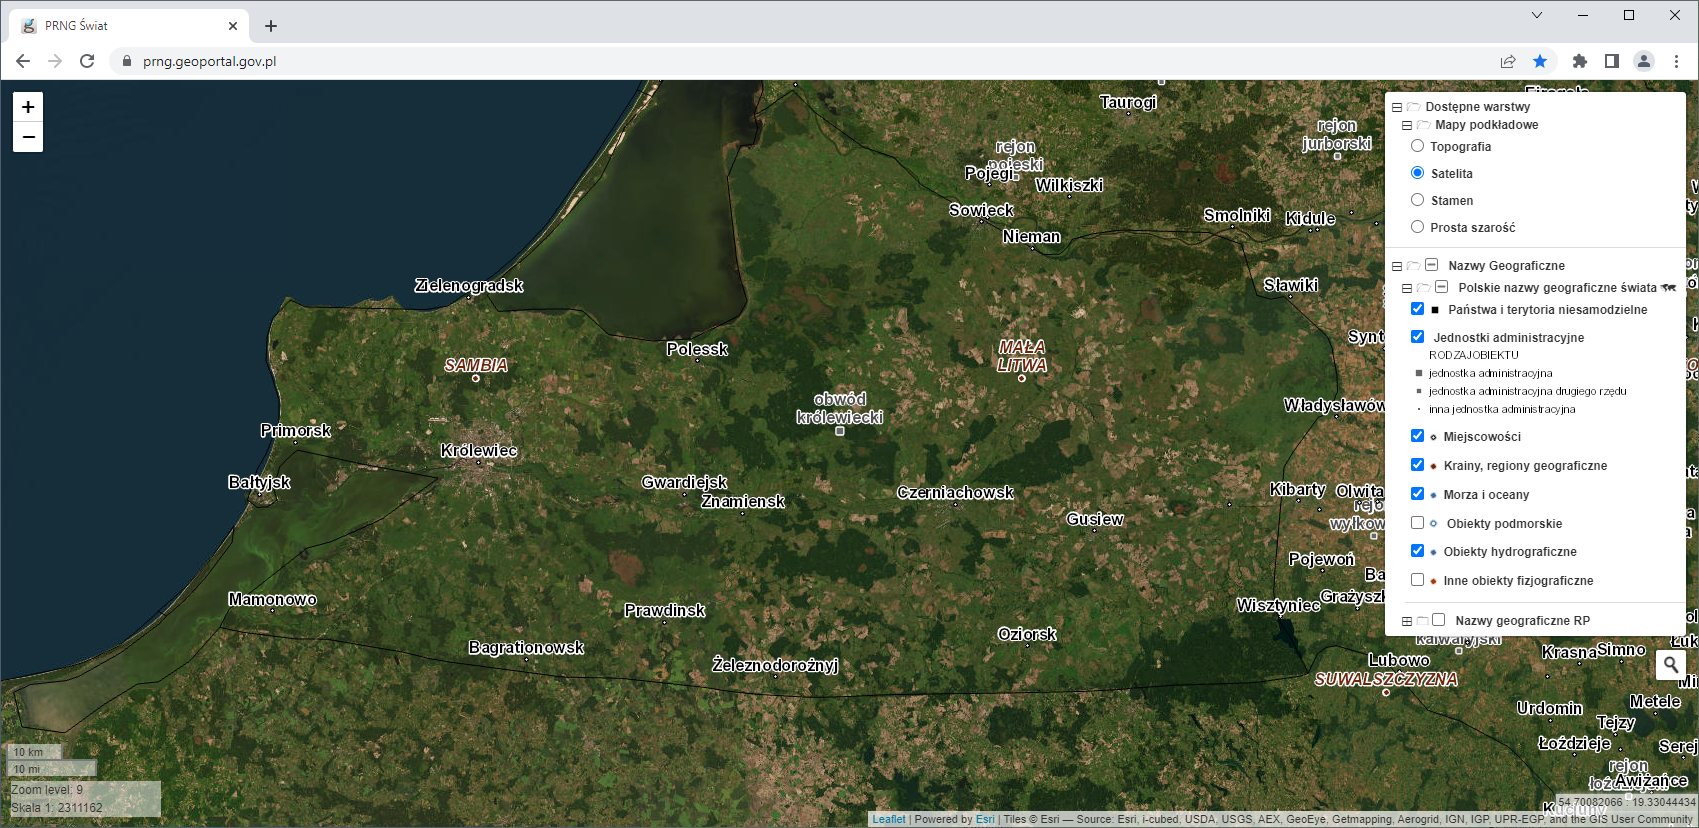 Ilustracja przedstawiająca zrzut ekranu z aplikacji mapowej prezentującej rejestr polskich nazw geograficznych świata.